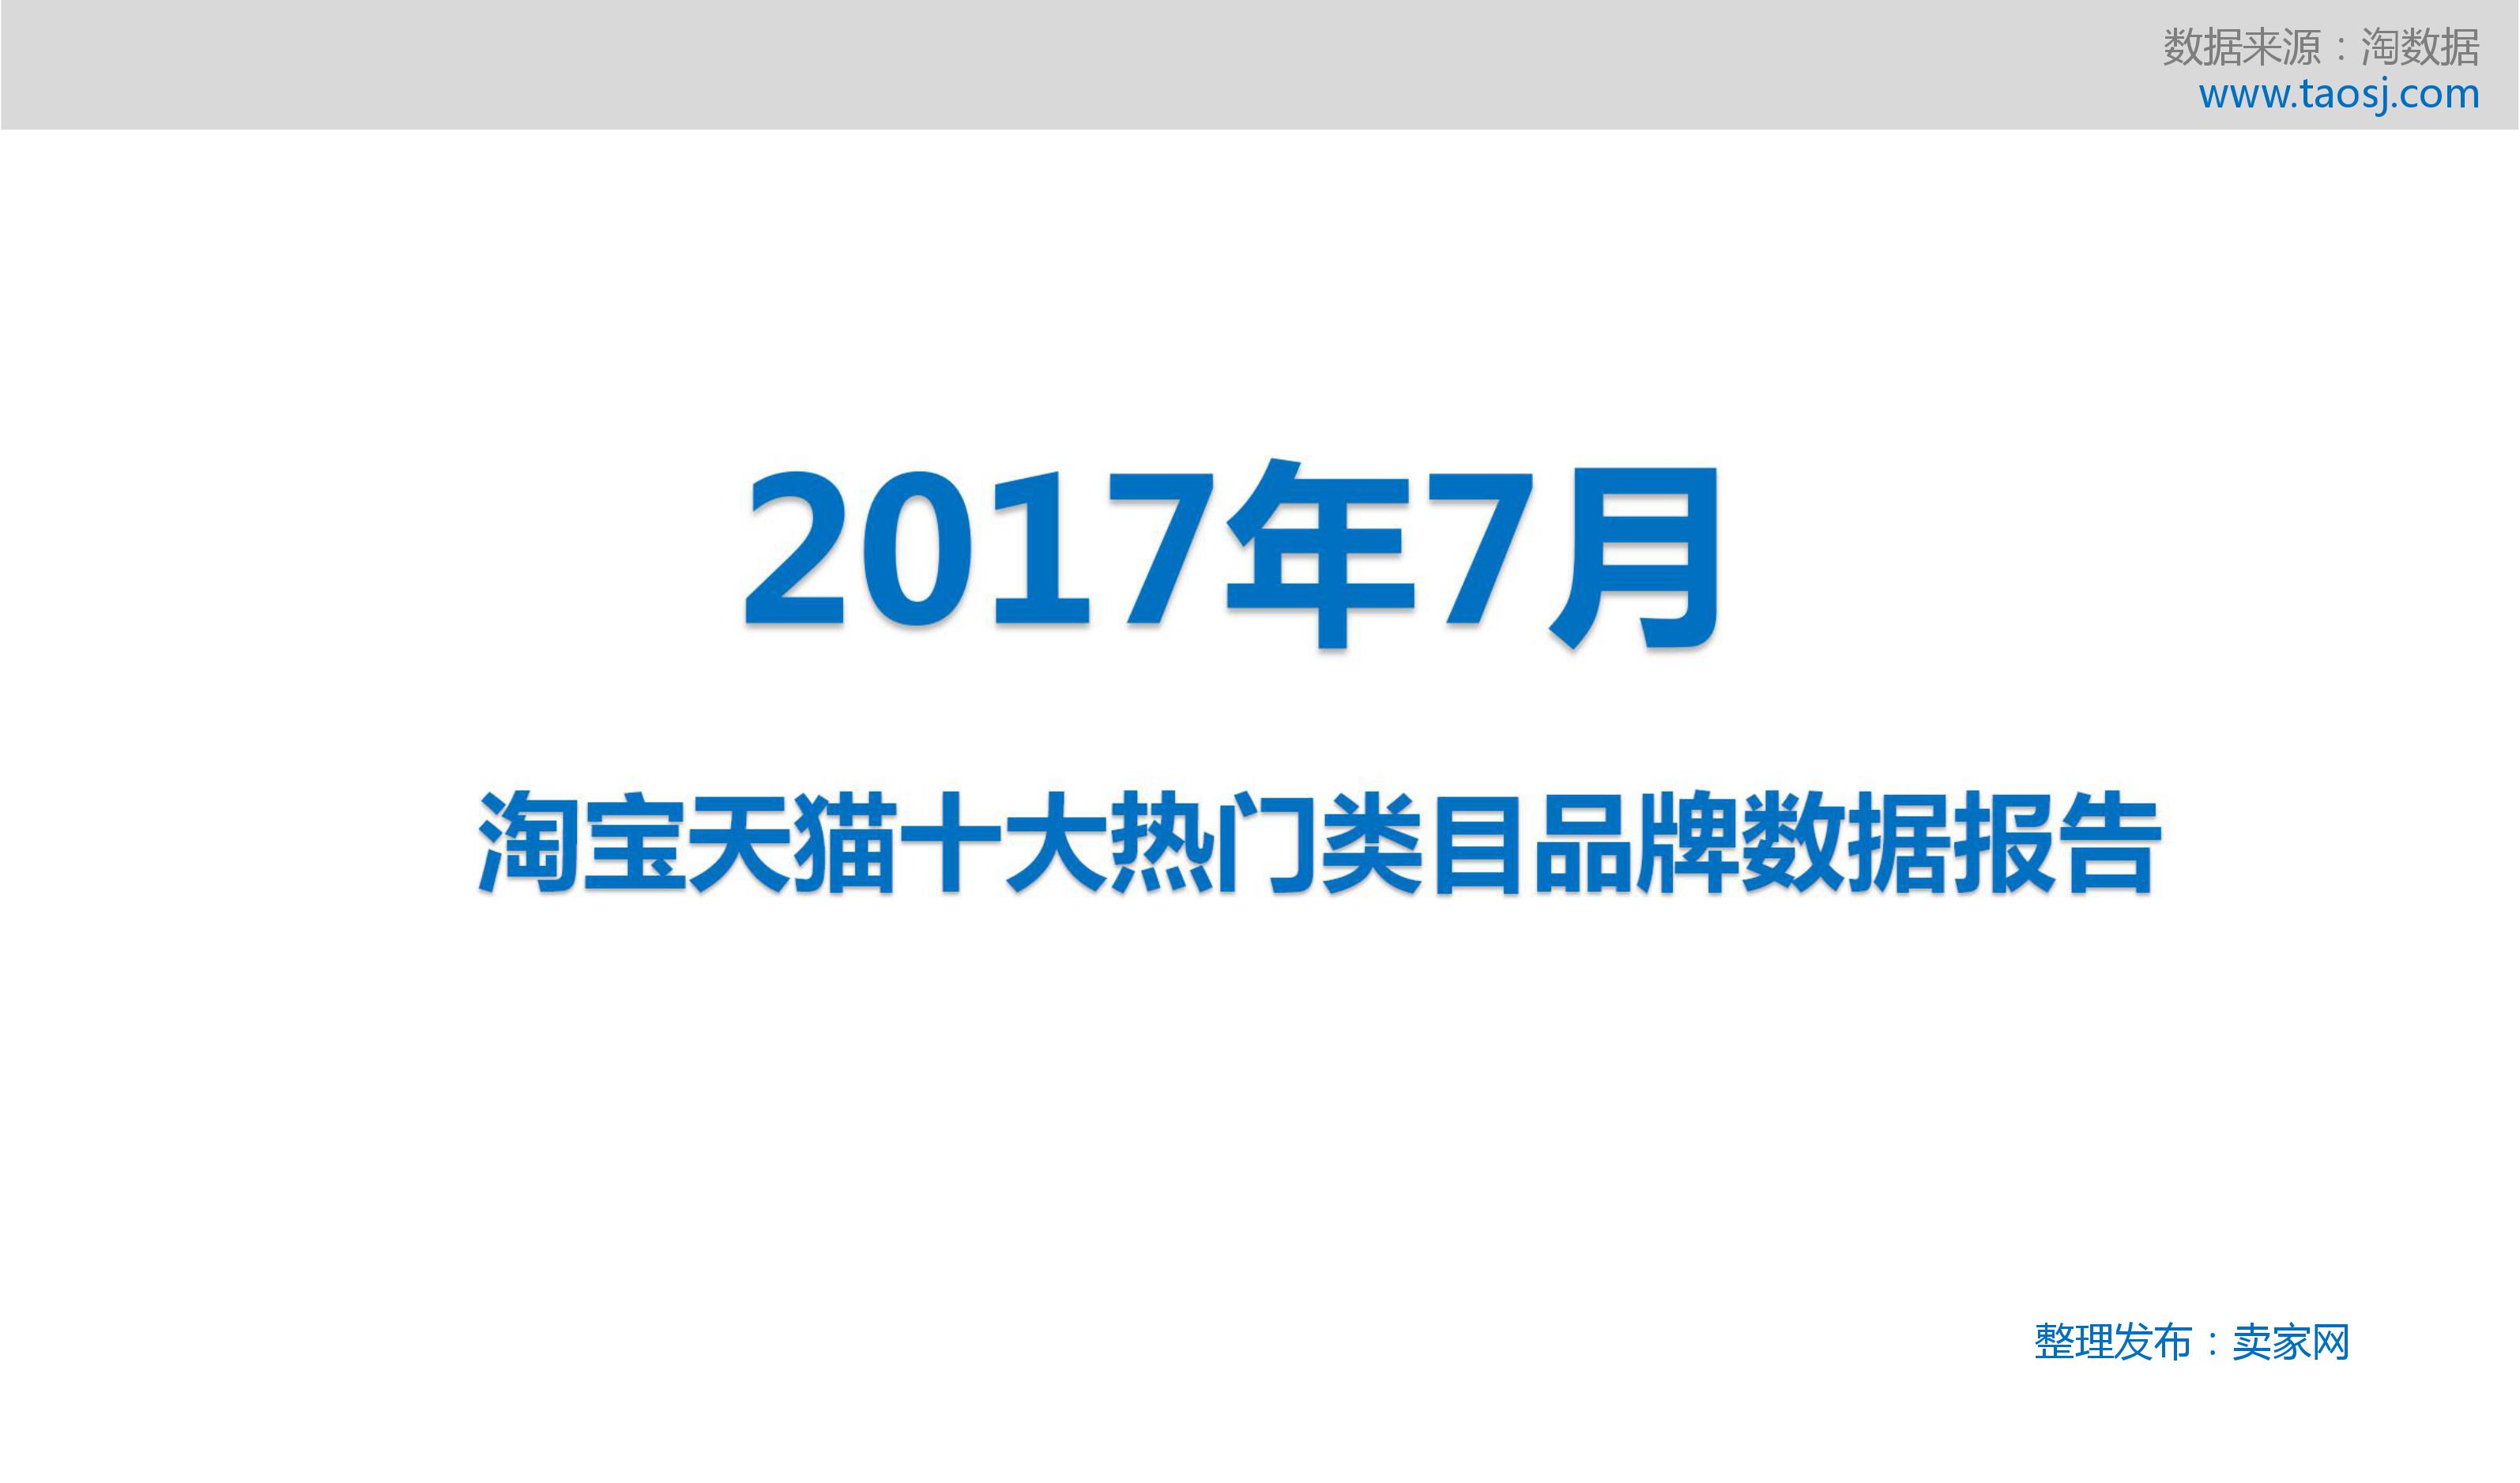 2017年7月淘宝天猫十大热门类别热销品牌榜数据报告